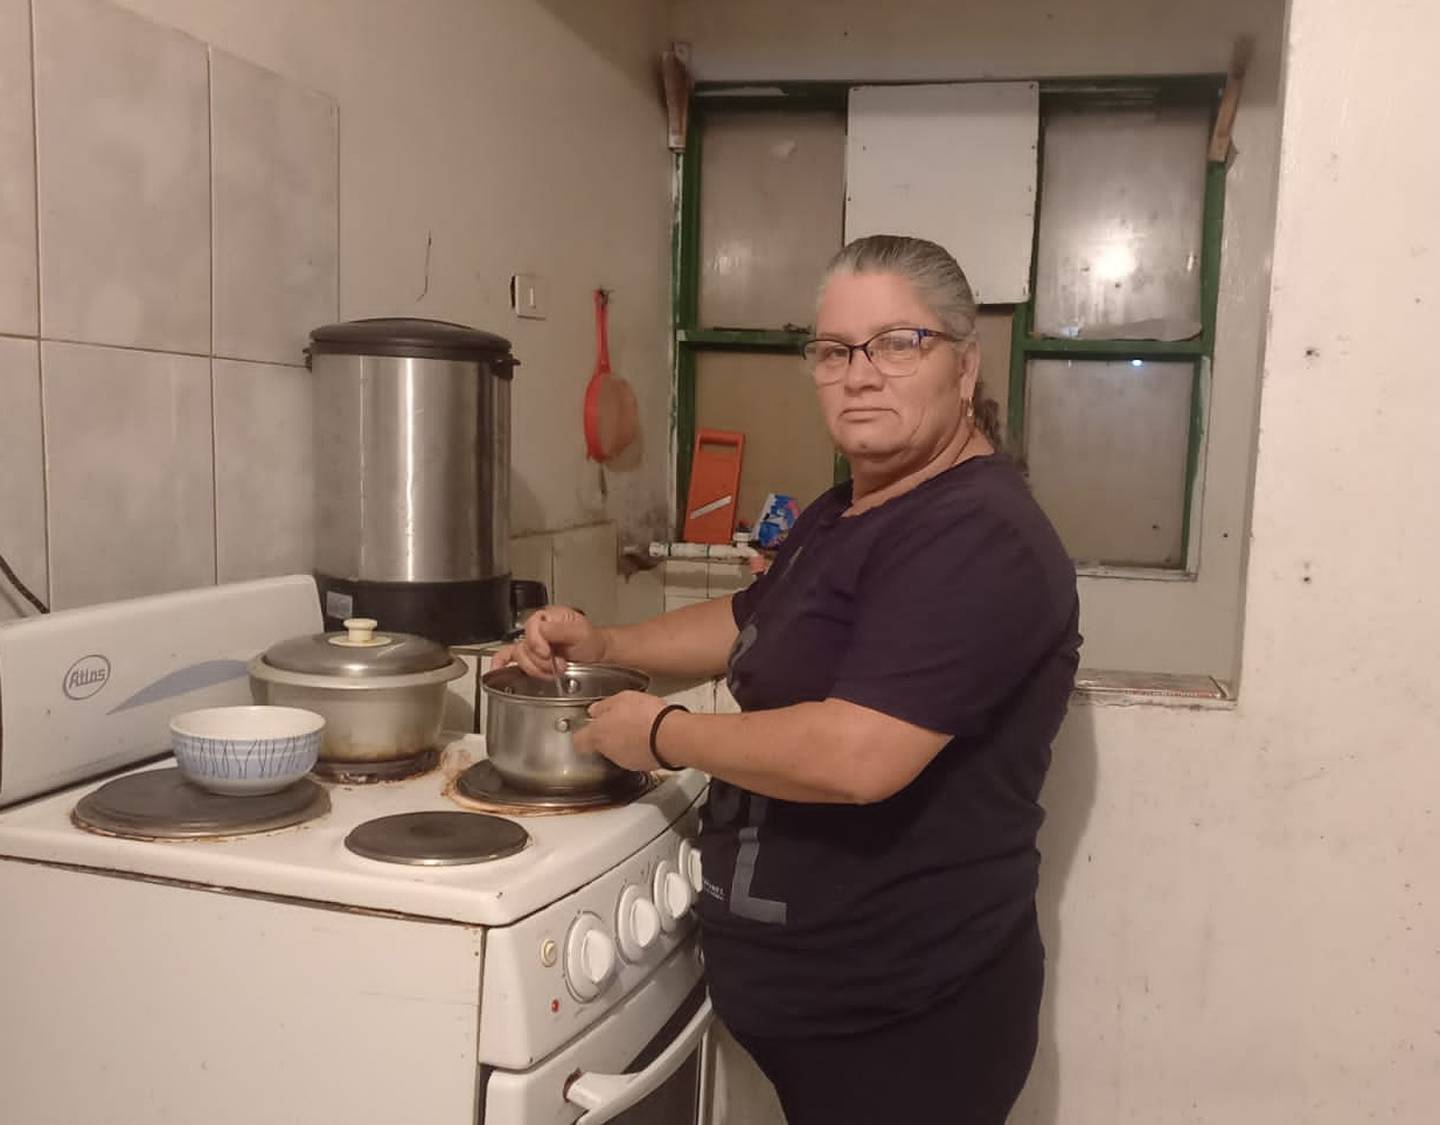 Carmen Bonilla, enfrenta mes a mes dificultades para comprar lo básico para su familia. Foto: Keyna Calderón.